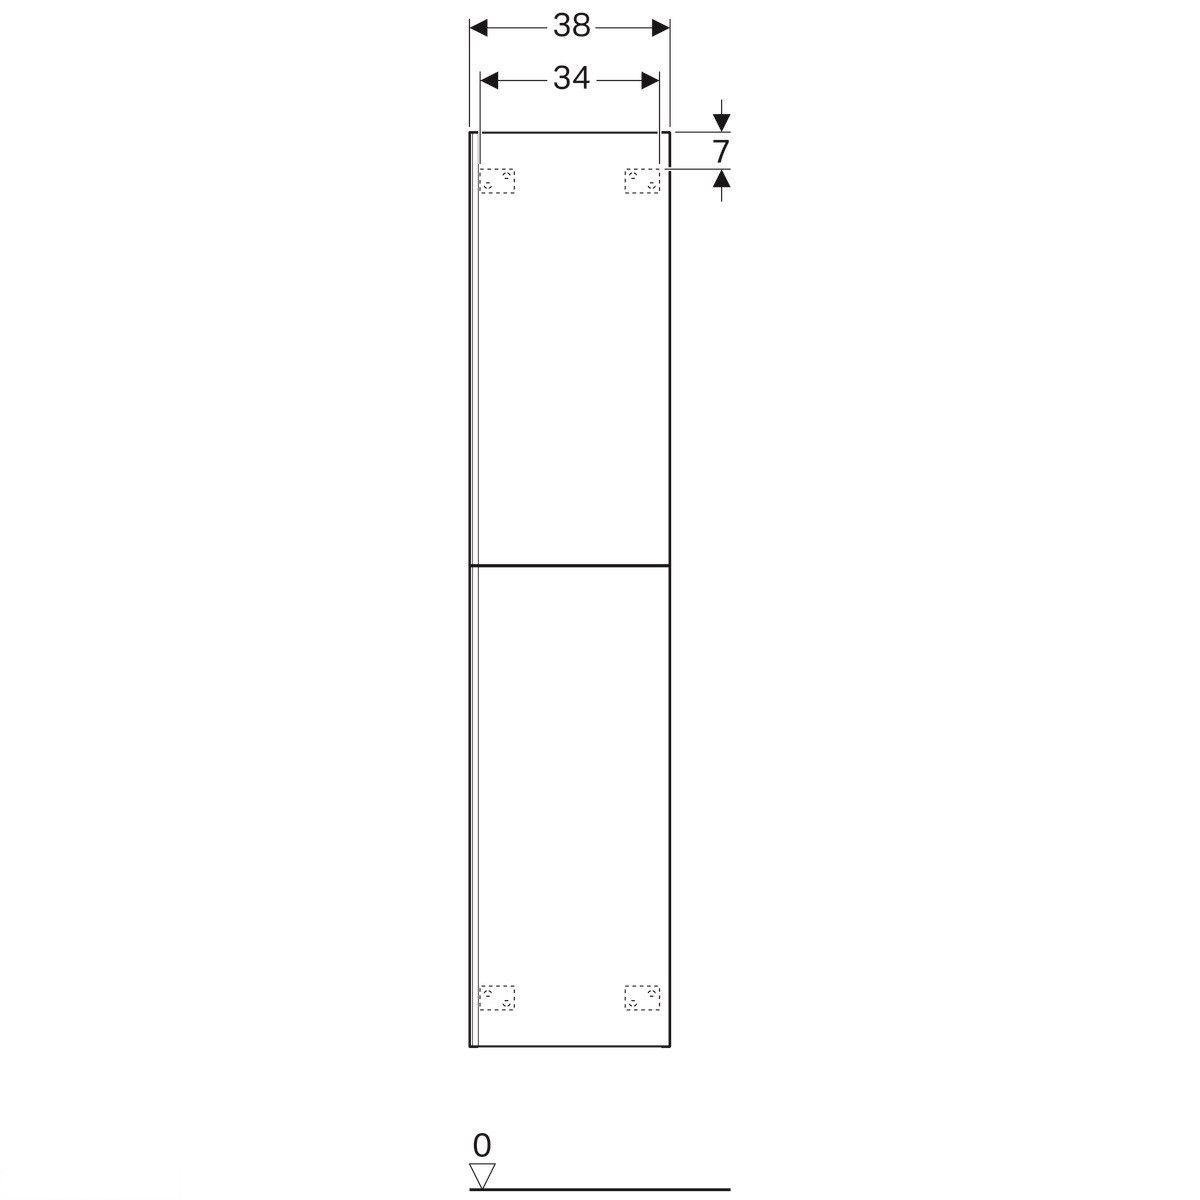 Высокий шкаф Geberit Acanto с двумя дверцами: корпус: лакированый матовый/ черный, фасад: черное стекло 500.619.16.1